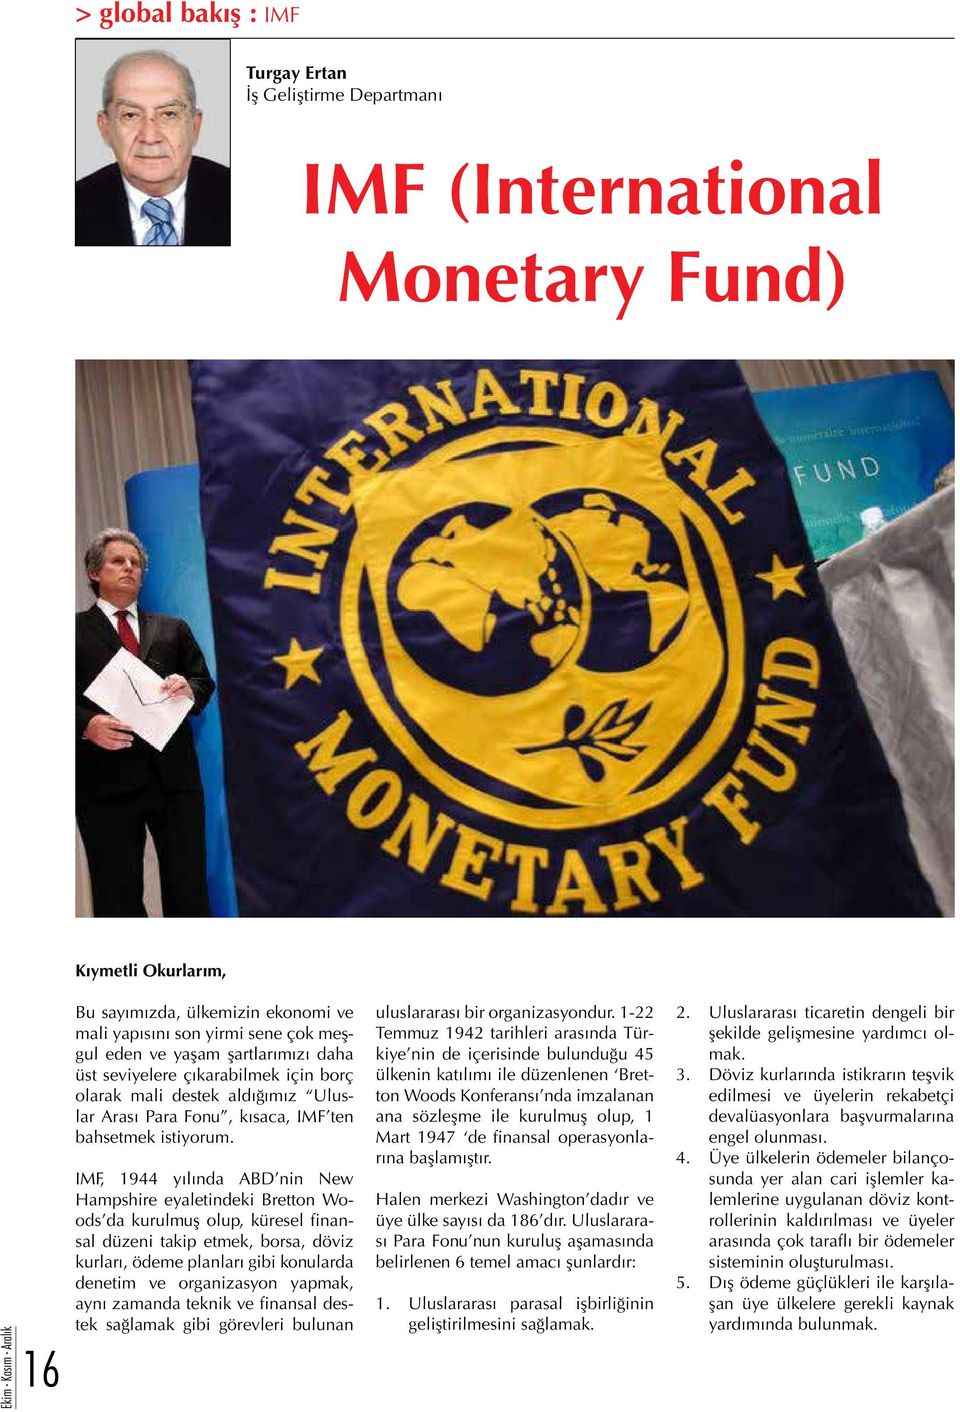 IMF, 1944 yılında ABD nin New Hampshire eyaletindeki Bretton Woods da kurulmuş olup, küresel finansal düzeni takip etmek, borsa, döviz kurları, ödeme planları gibi konularda denetim ve organizasyon